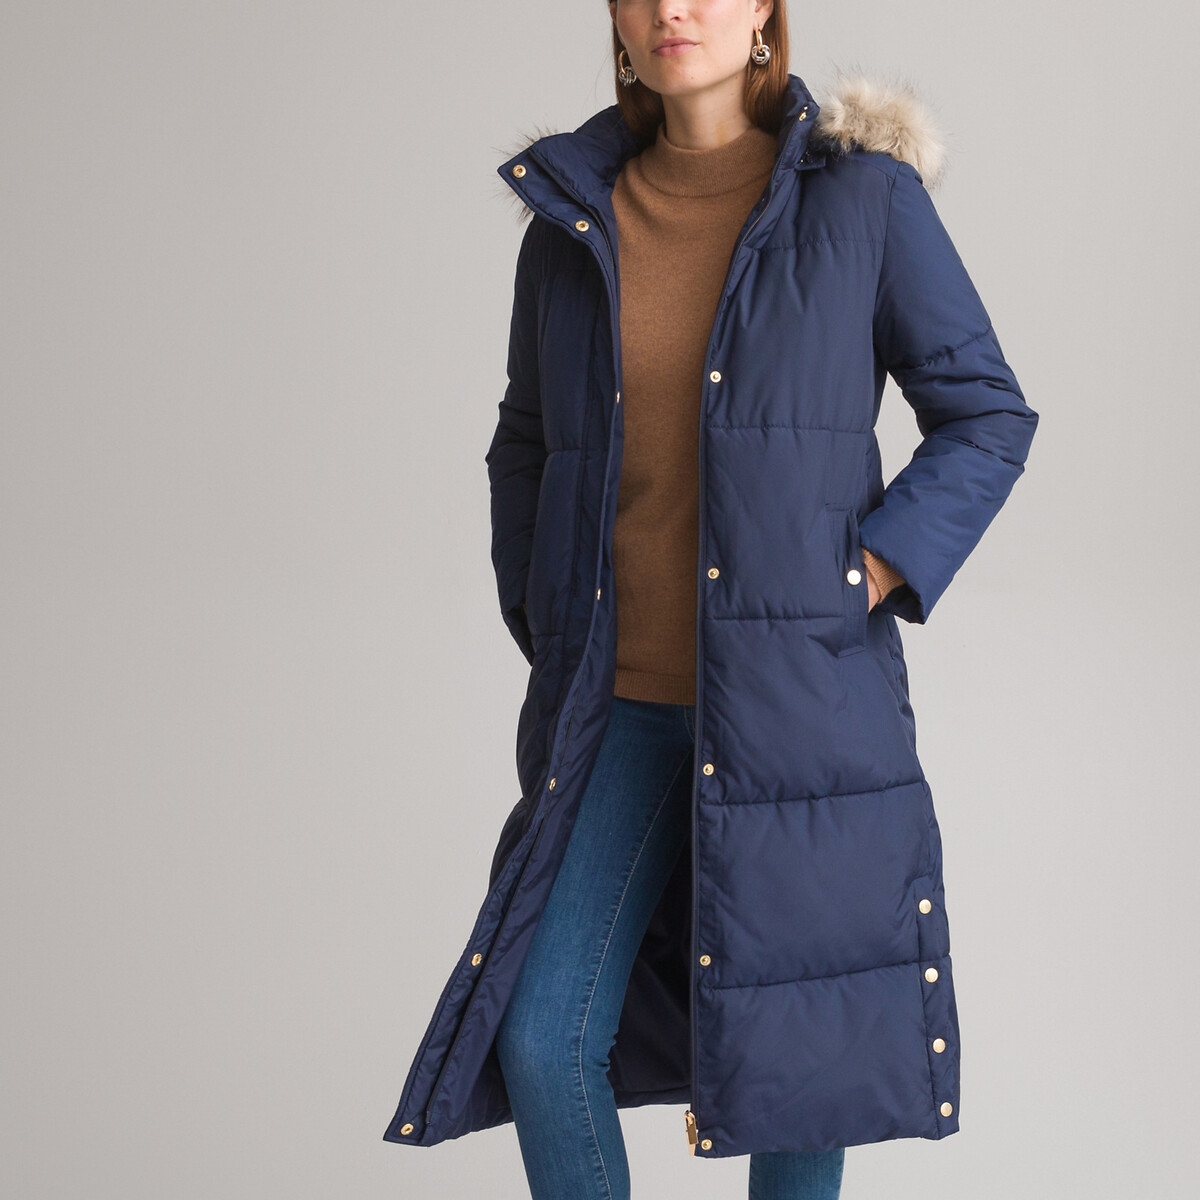 Куртка Стеганая длинная застежка на молнию зимняя модель 36 (FR) - 42 (RUS) синий LaRedoute, размер 36 (FR) - 42 (RUS)